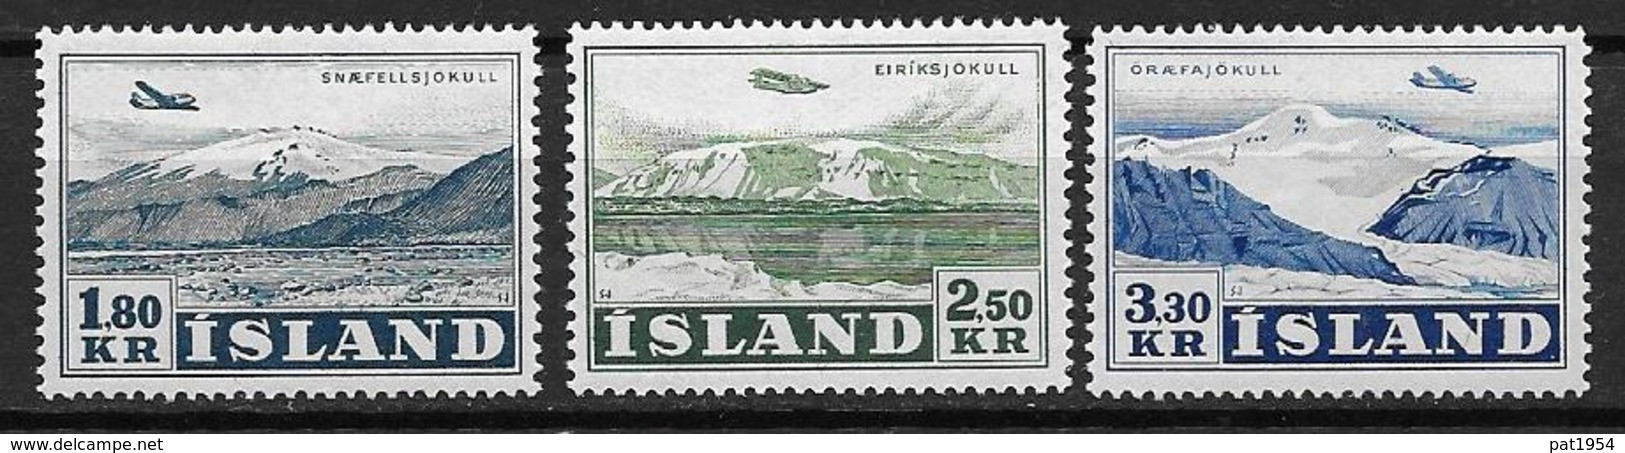 Islande 1952 Poste Aérienne N° 27/29 Neufs ** MNH, Avion Au Dessus De Glaciers - Poste Aérienne